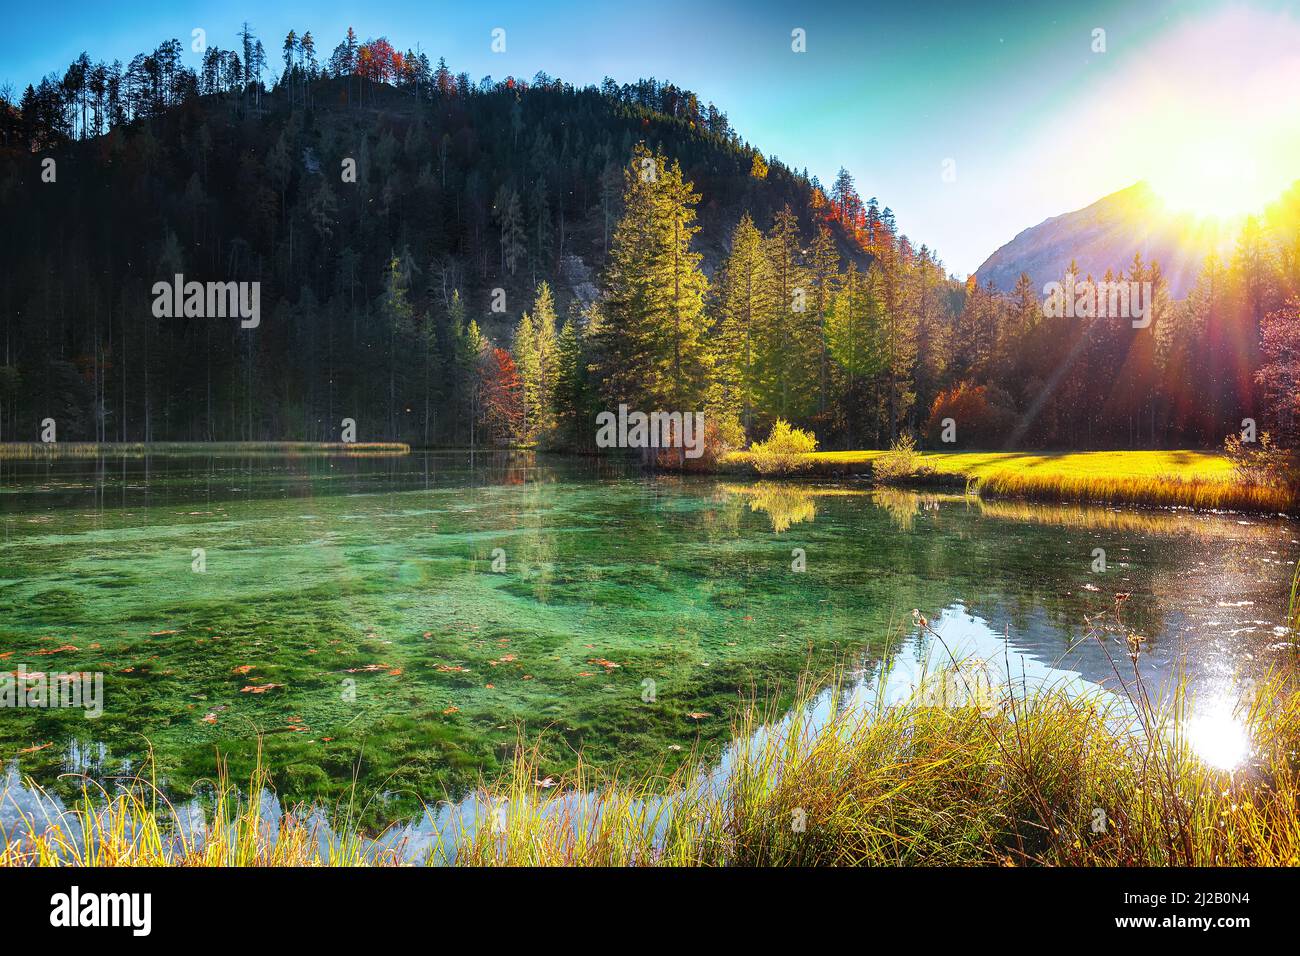 Breathtaking autumn scene of Schiederweiher pond. Poppular travell destination. Location: Hinterstoder, Kirchdorf an der Krems district, Upper Austria Stock Photo